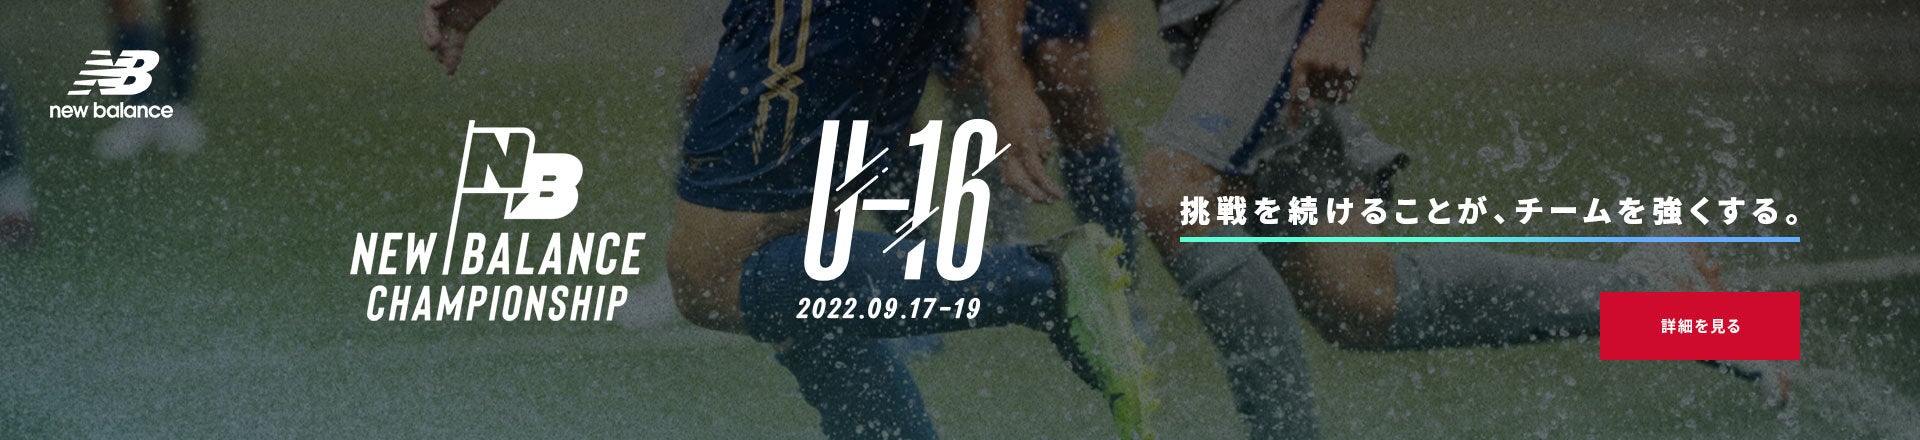 NEW BALANCE CHAMPIONSHIP U-16 2022.09.17-19